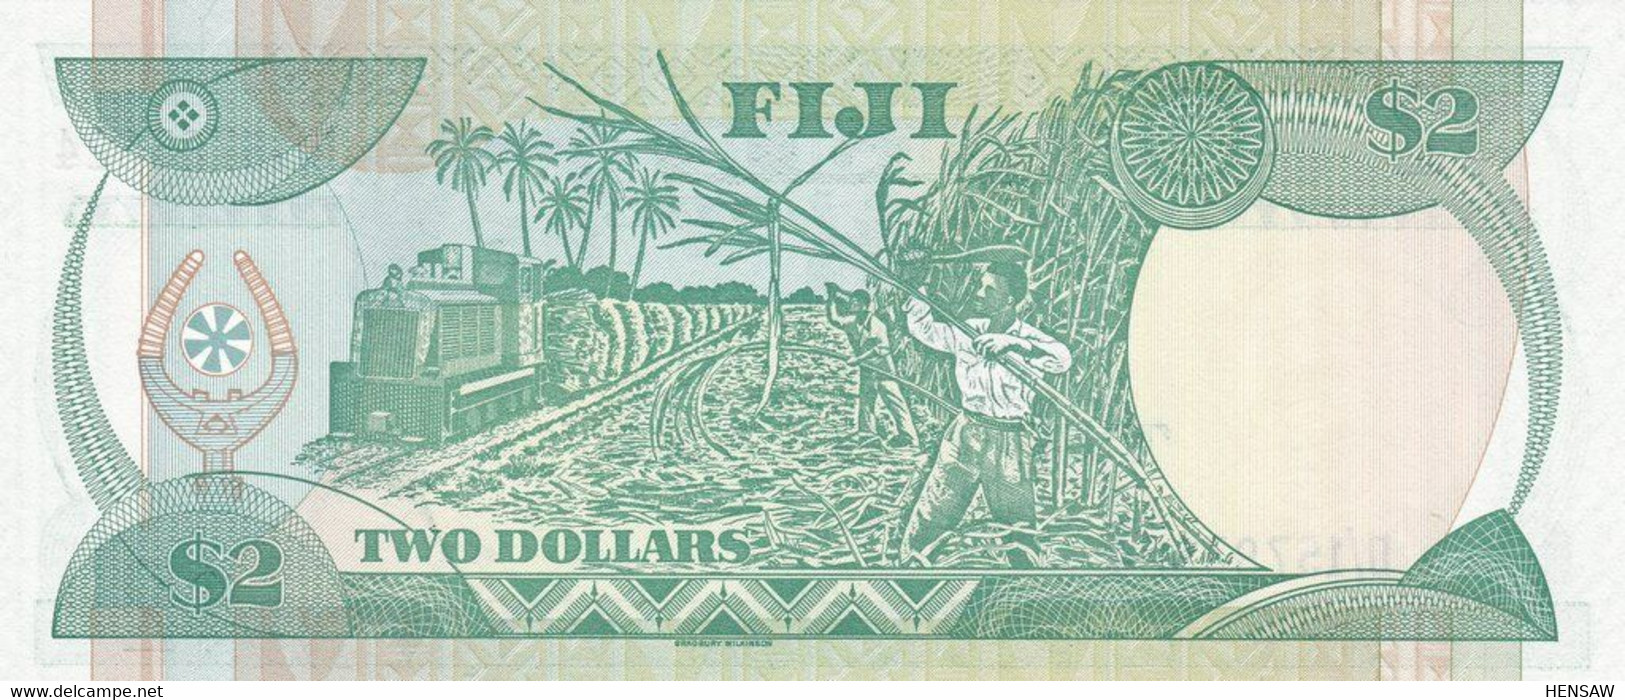 FIJI 2 DOLLARS 1988 P 87 UNC SC NUEVO - Fiji